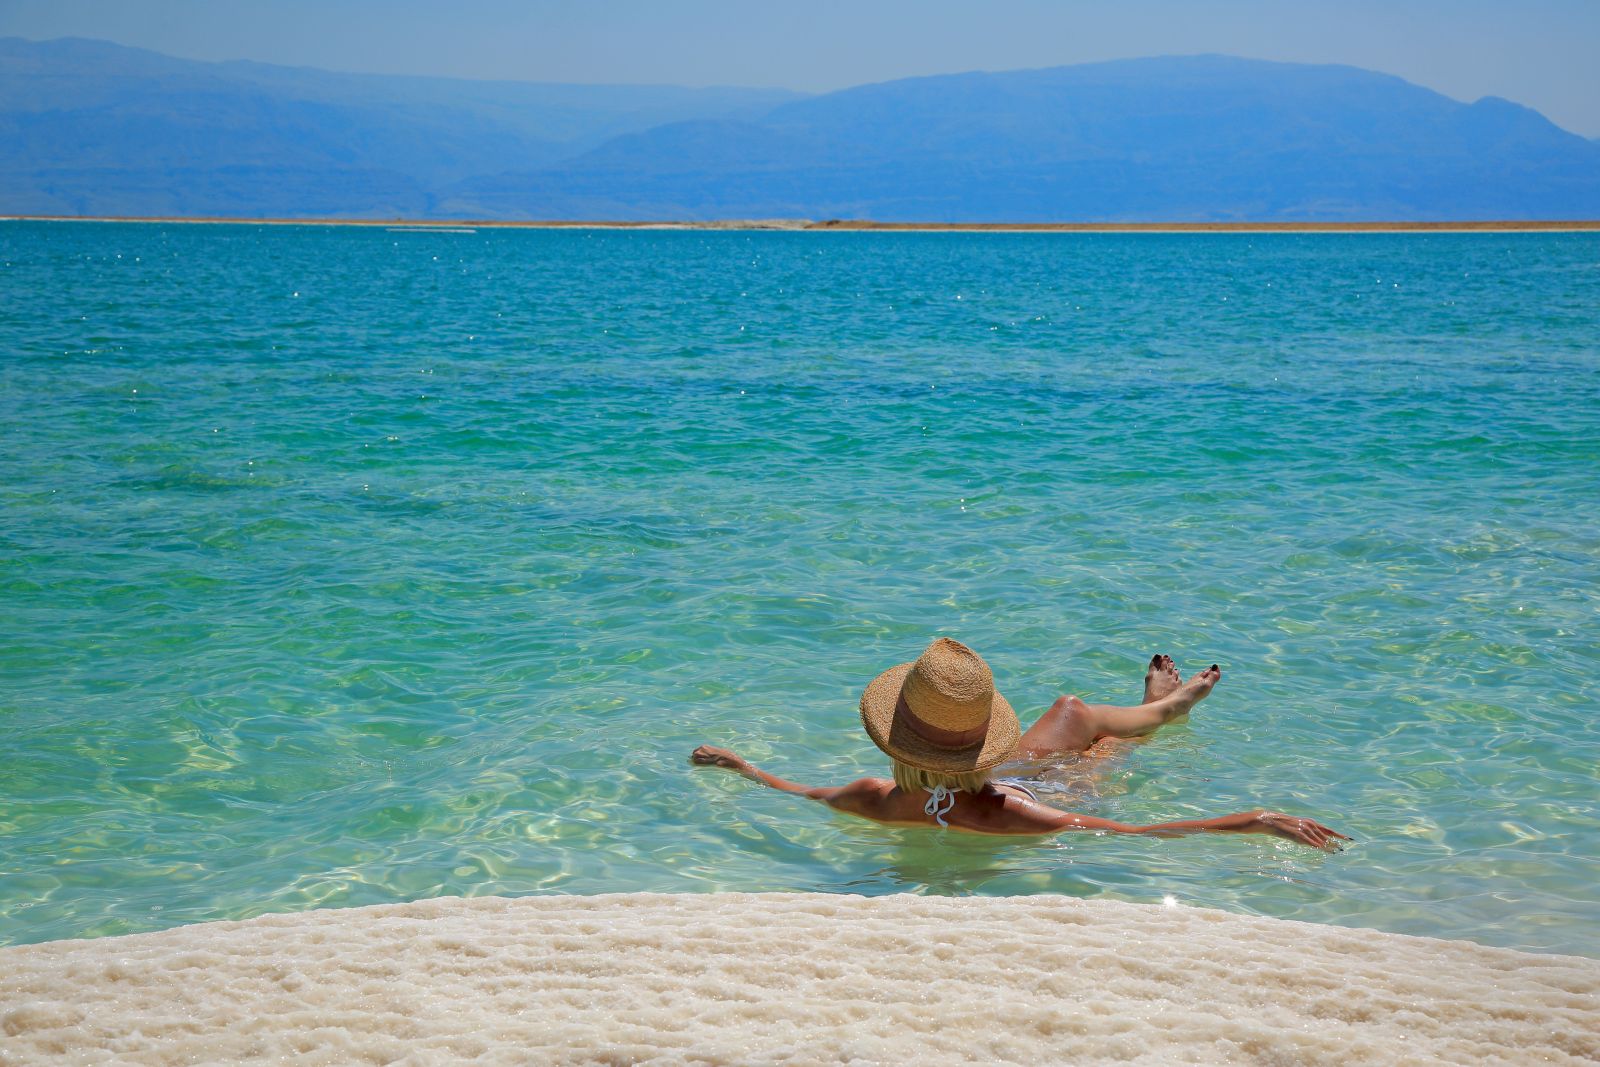 Tourist floating in the Dead Sea in Jordan